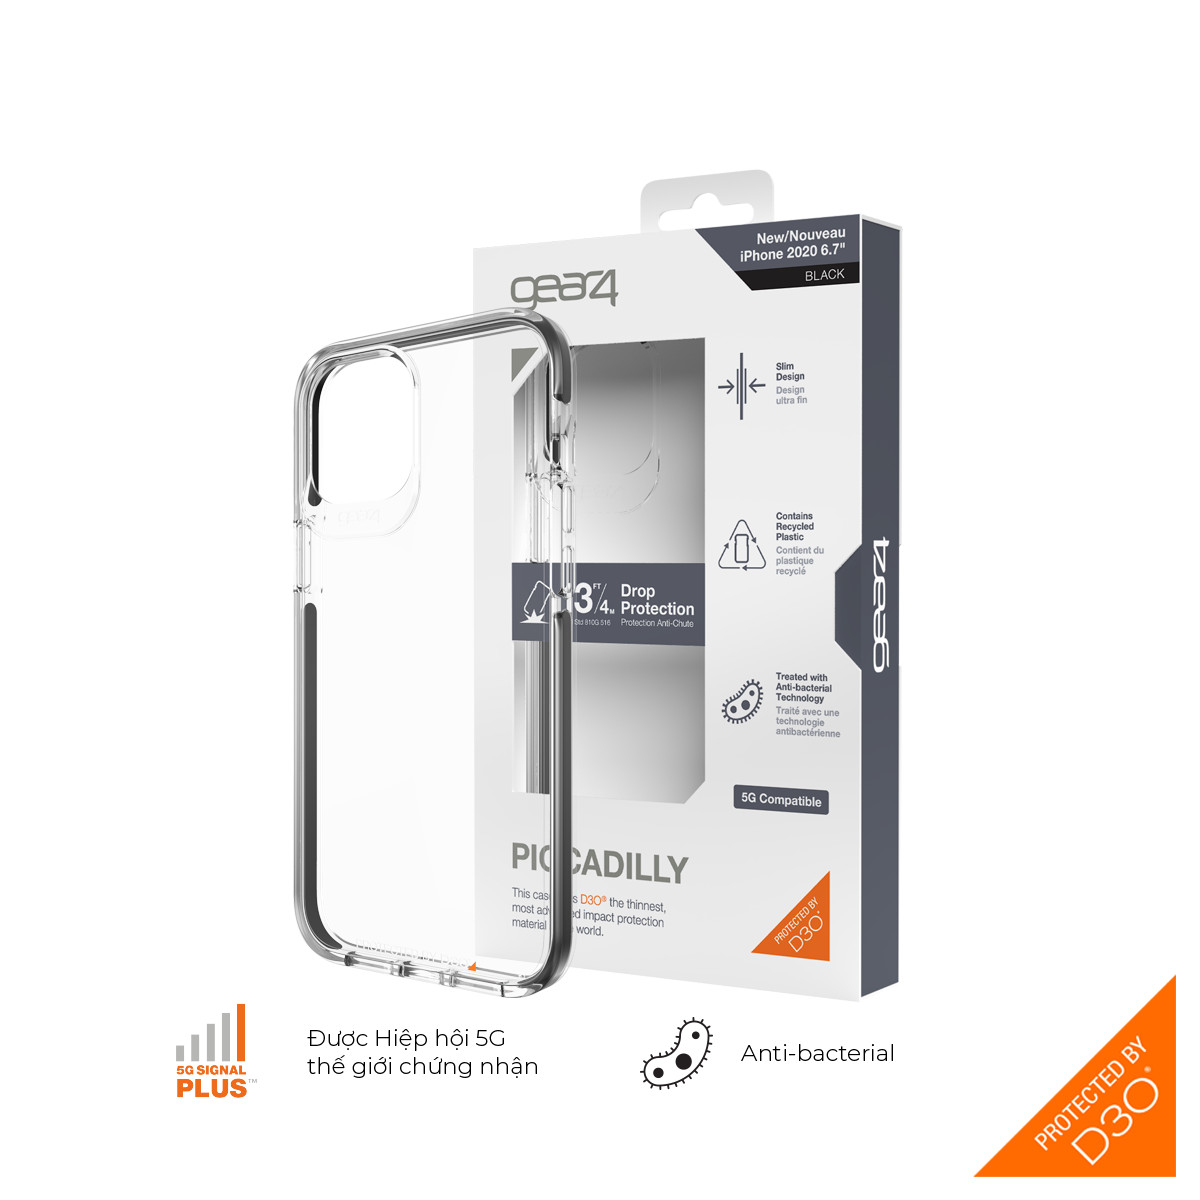 Ốp lưng Gear4 Piccadilly iPhone - Công nghệ chống sốc độc quyền D3O, kháng khuẩn, tương thích tốt với sóng 5G - Hàng chính hãng - Black - iPhone 12 Pro Max